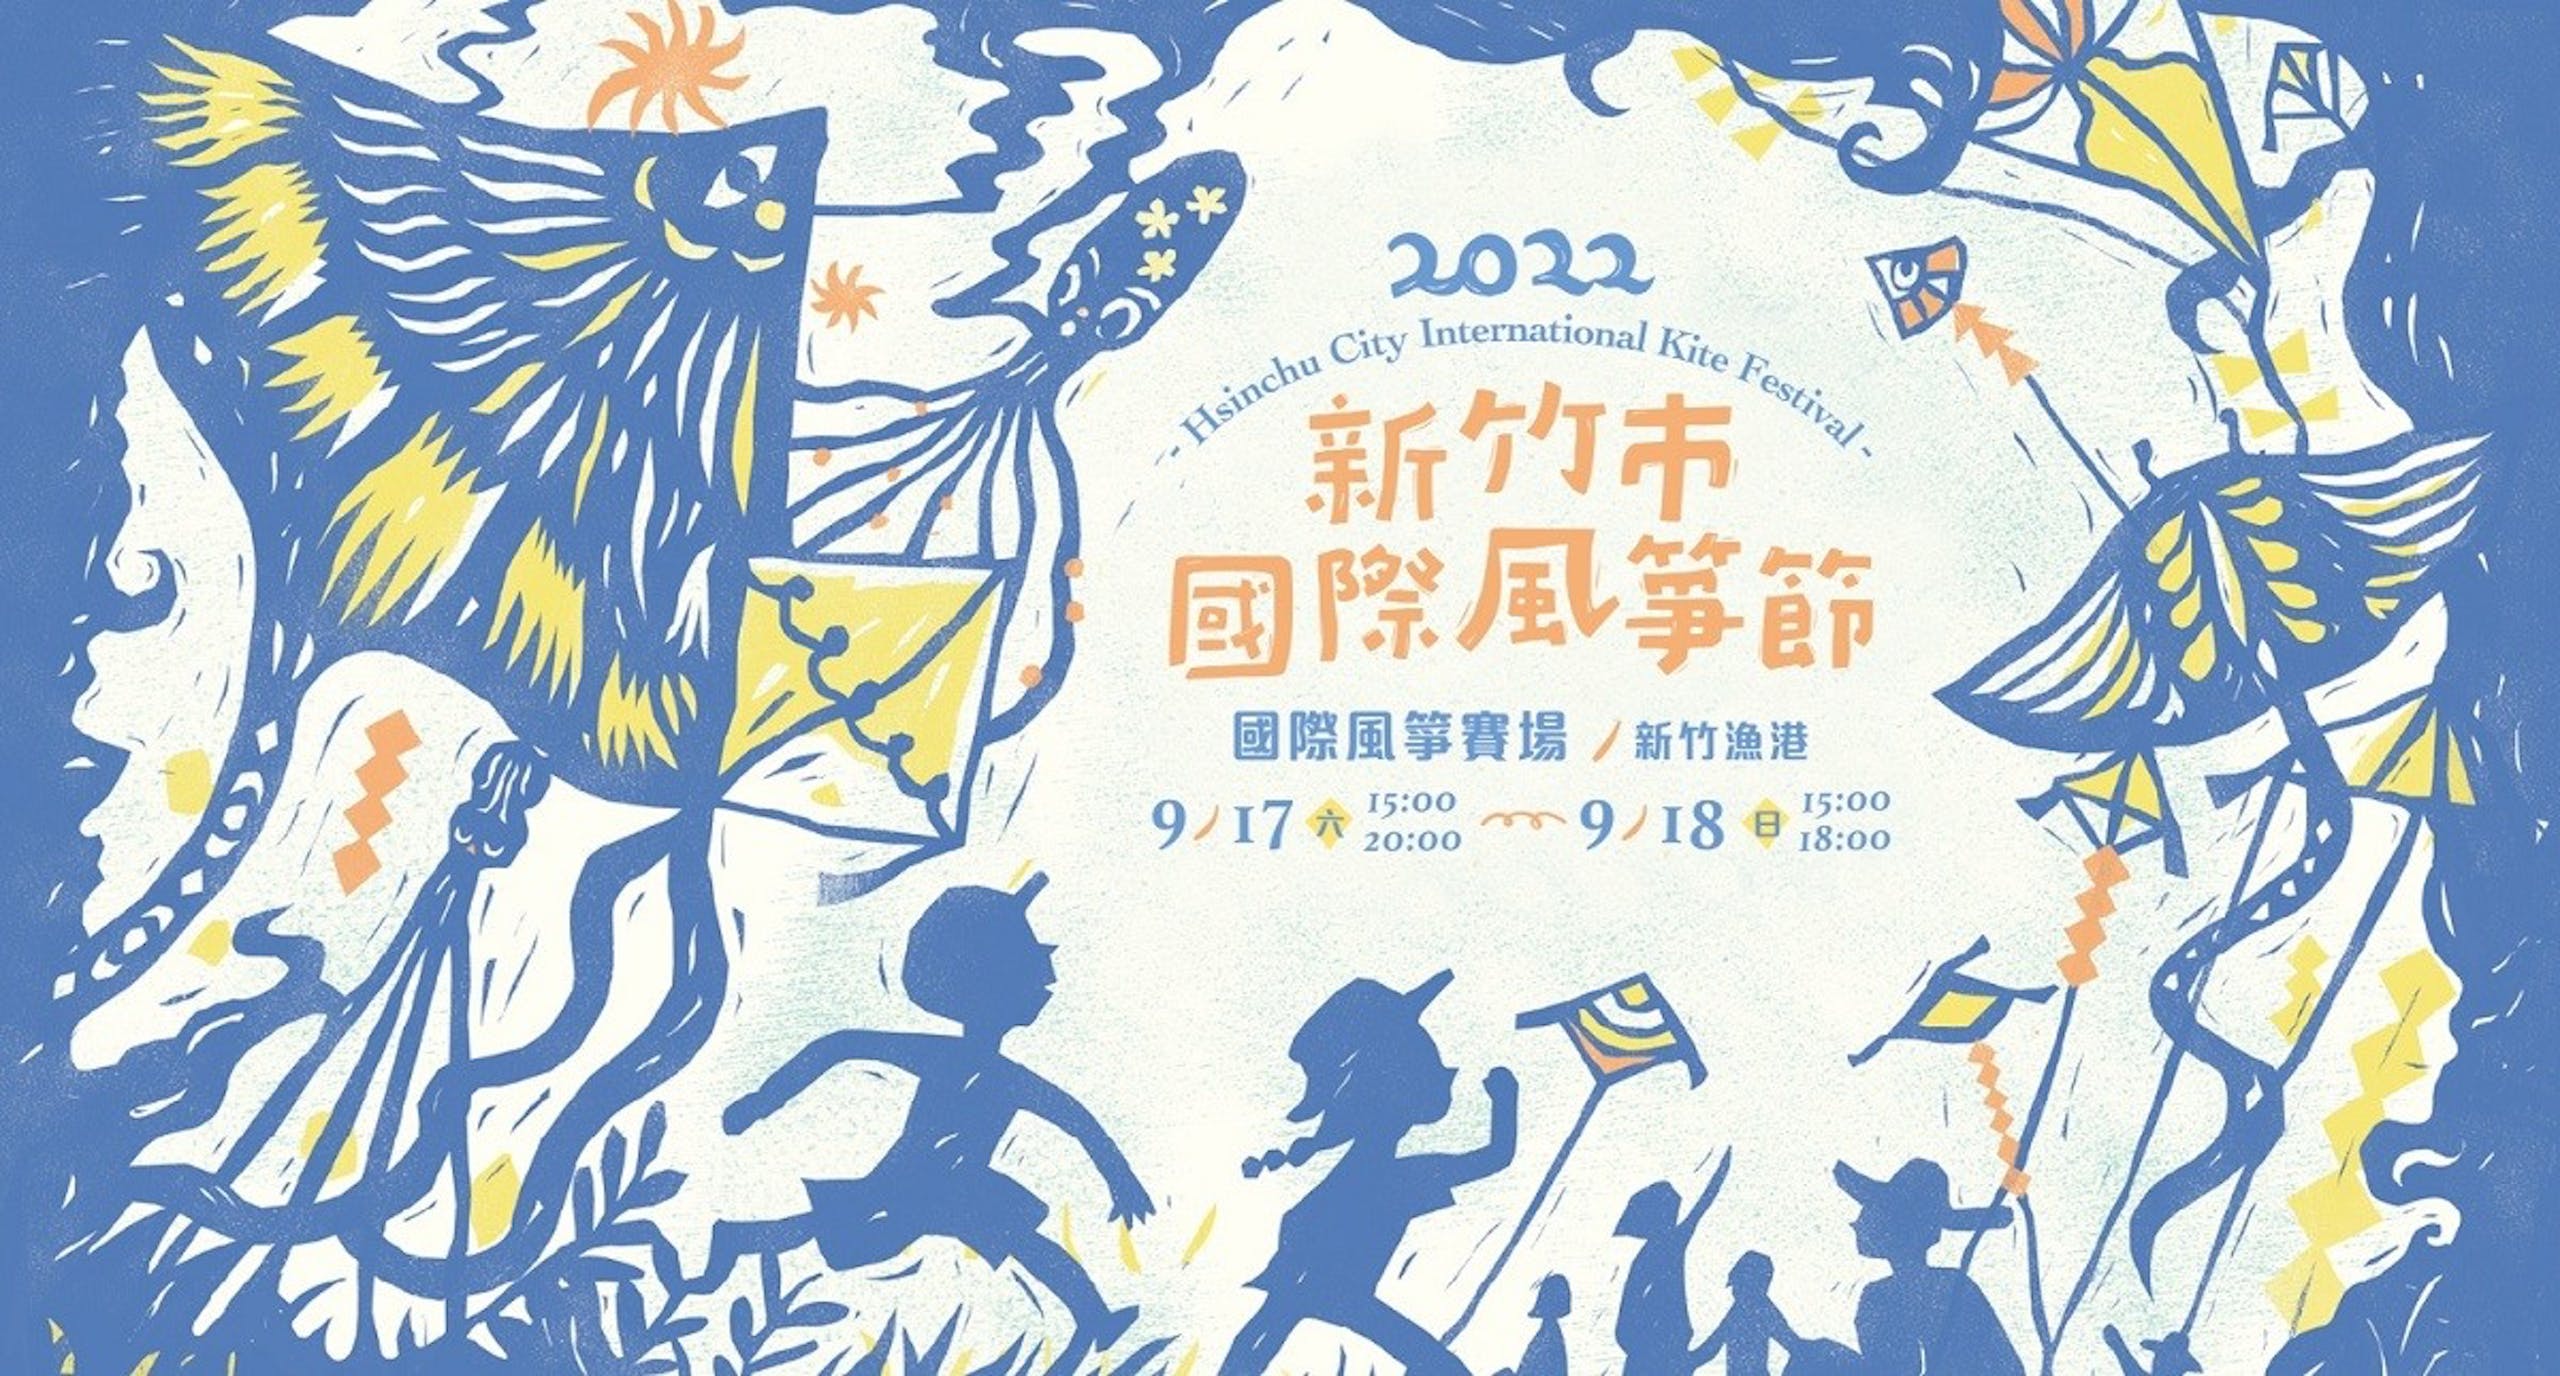 照片中提到了2022、-Hsinchu City International Kite Festival -、新竹市，跟Tkiyet Um Ali、羅德麥克風有關，包含了2022新竹國際風箏節、國際風箏競技場、新竹、南寮漁港、新竹市國際風箏節